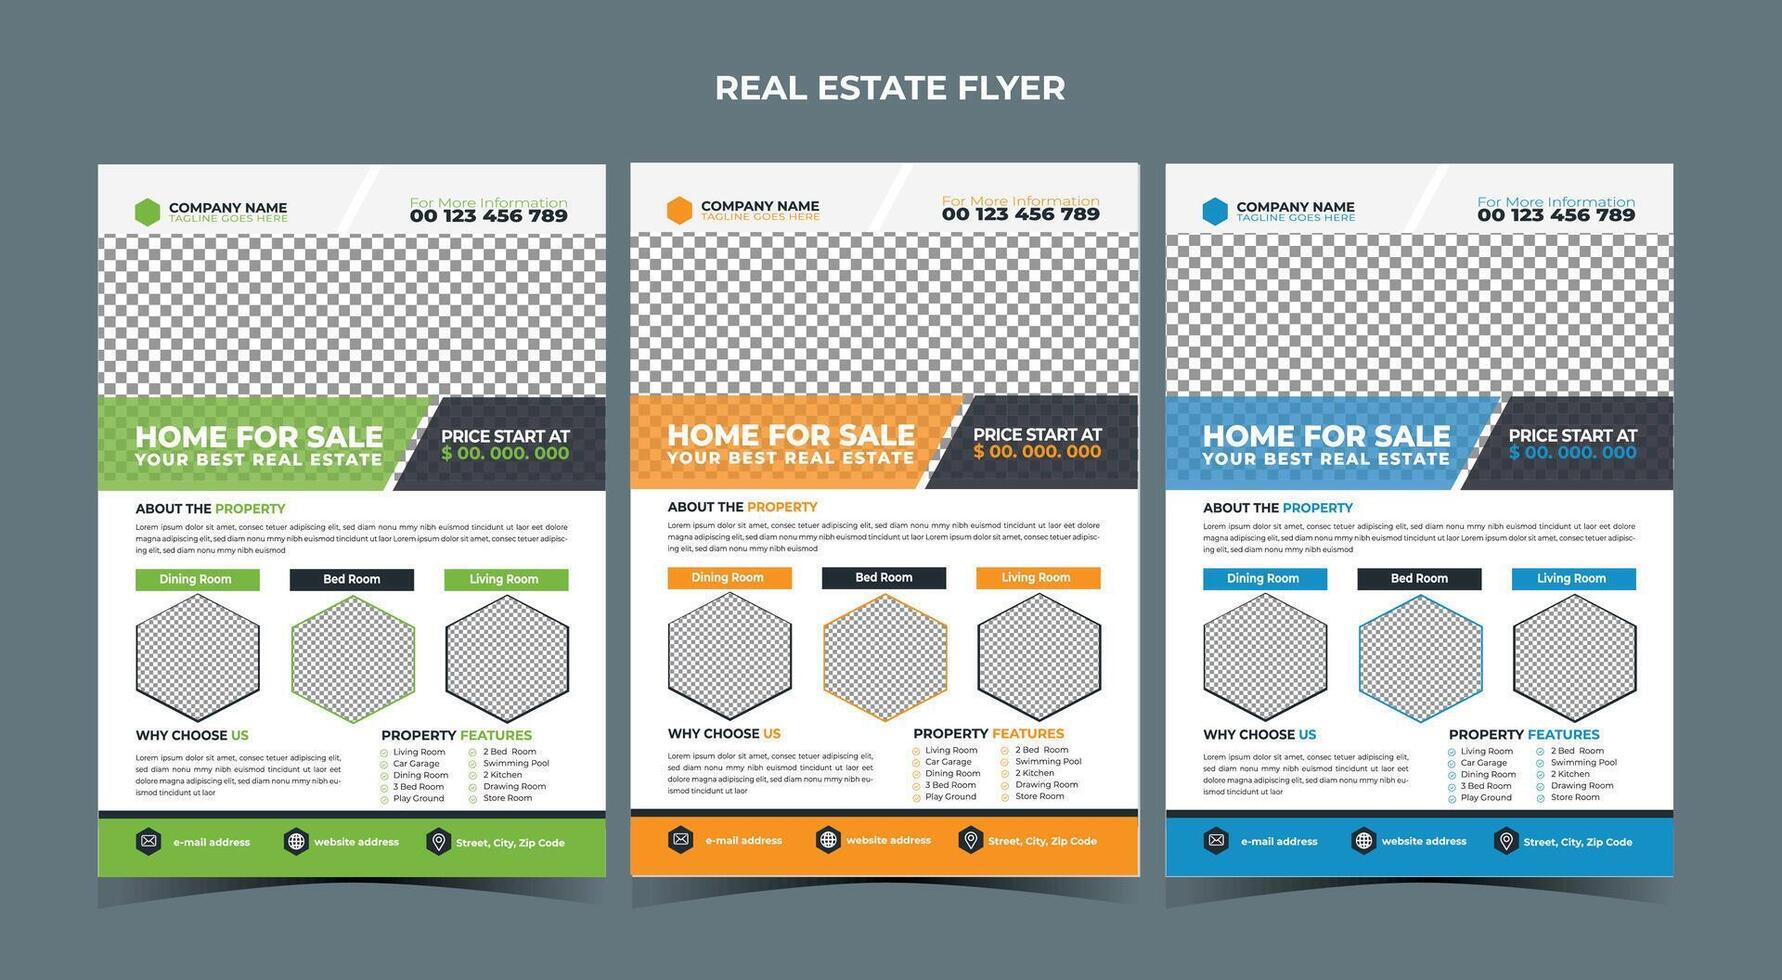 Immobilien Business Flyer Design-Vorlage vektor